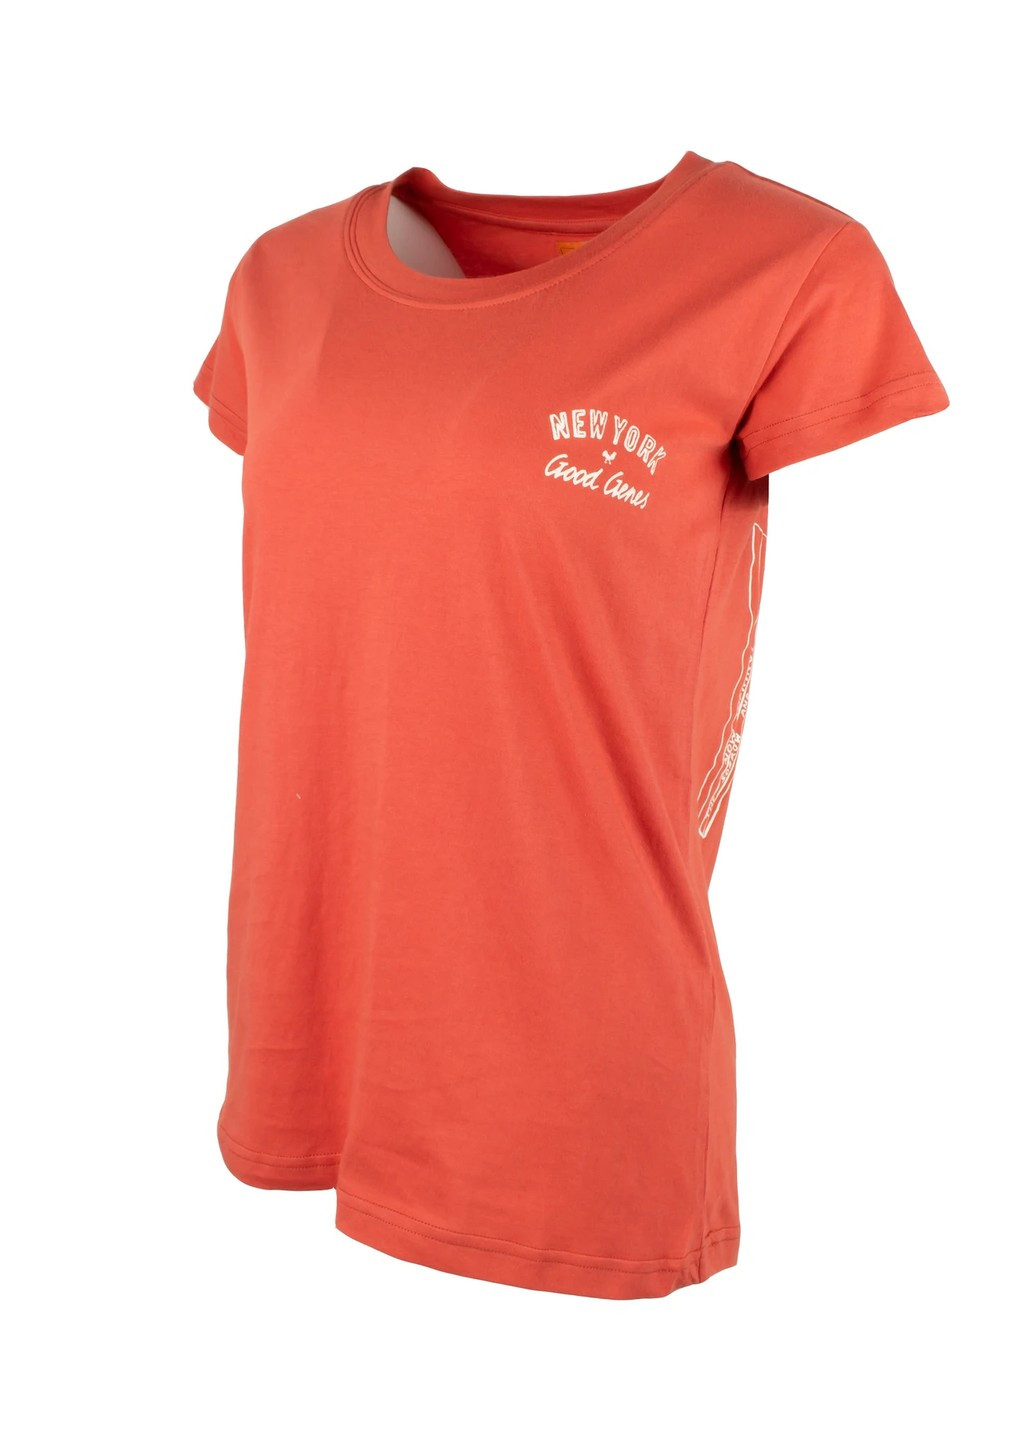 Оранжевая летняя футболка женская Good Genes